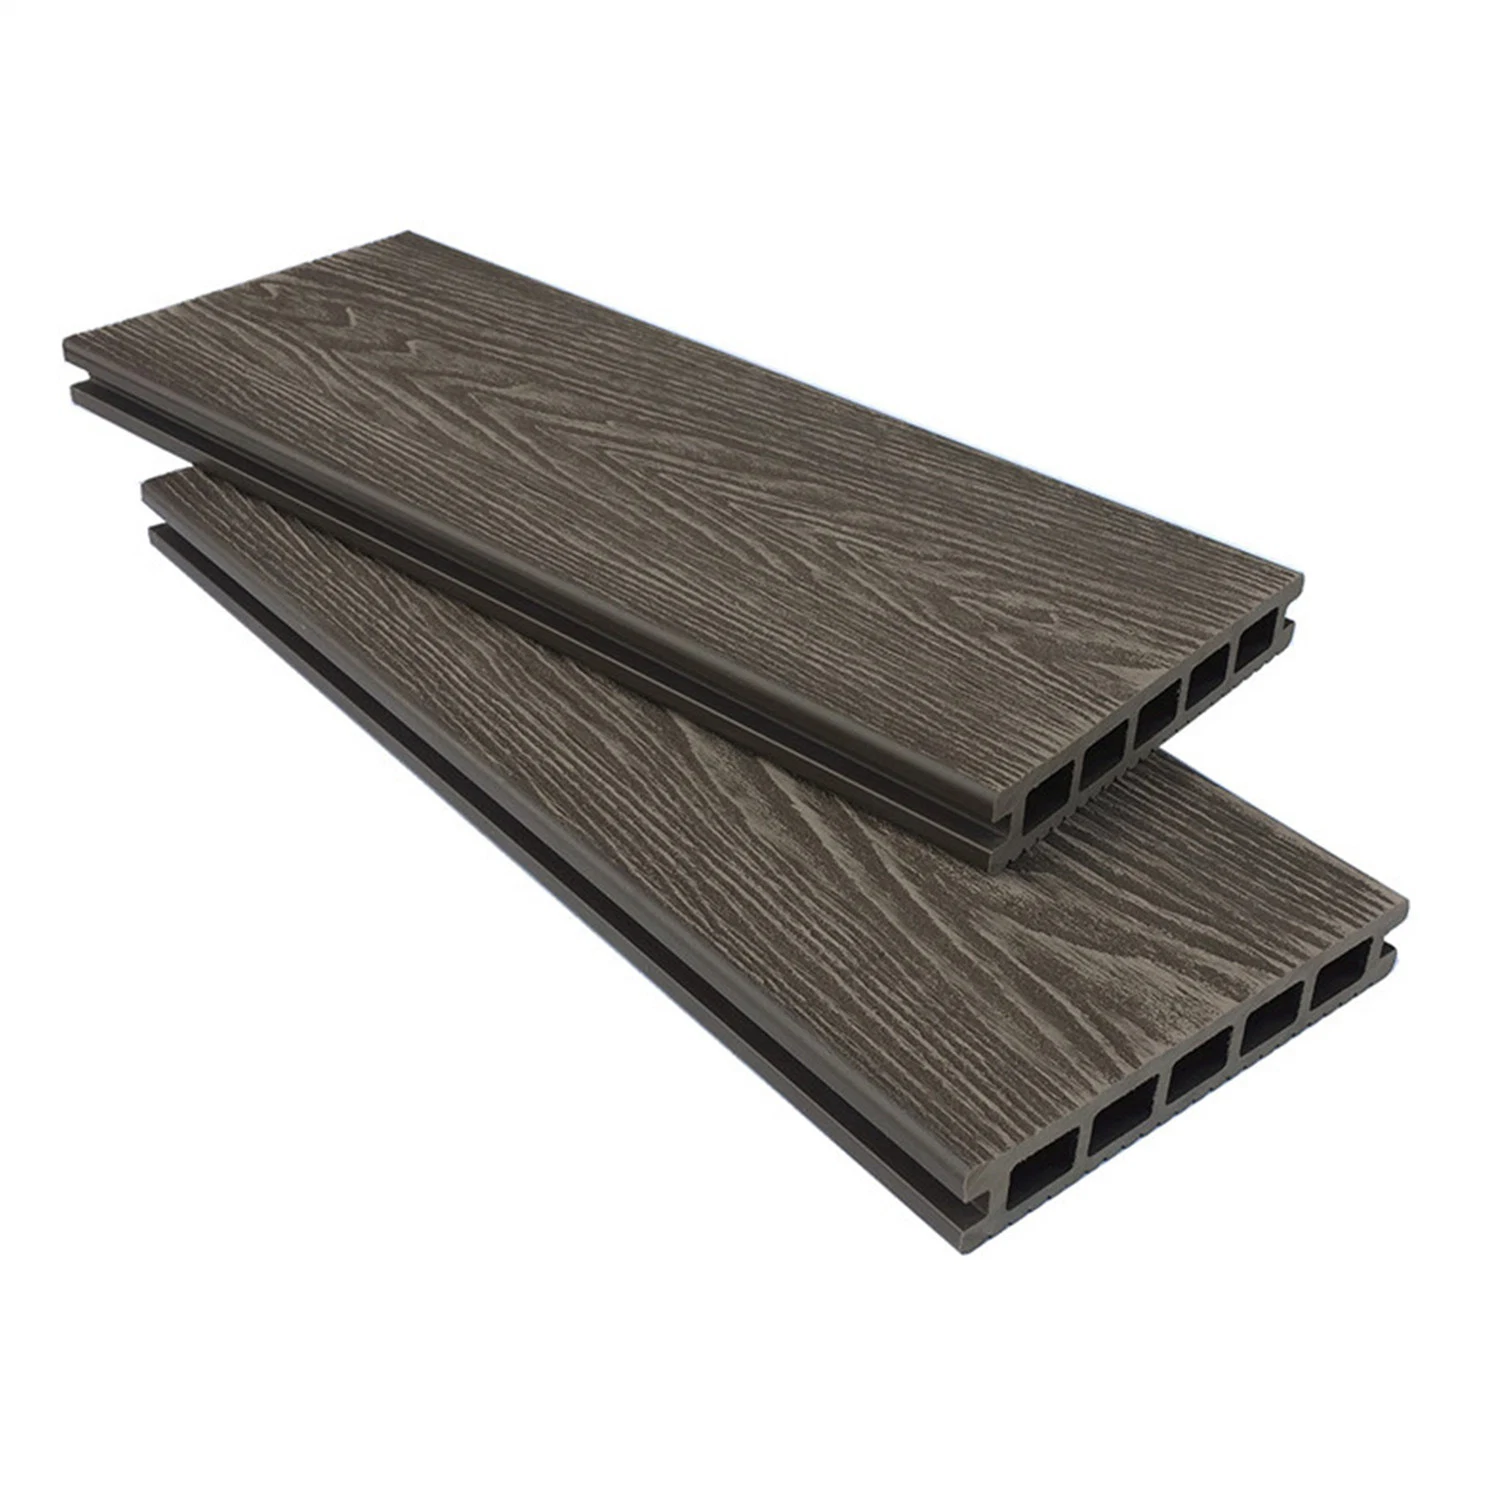 Outdoor Wood Plastic Embossed Wood Grain WPC Decking Composite Outdoor Flooring